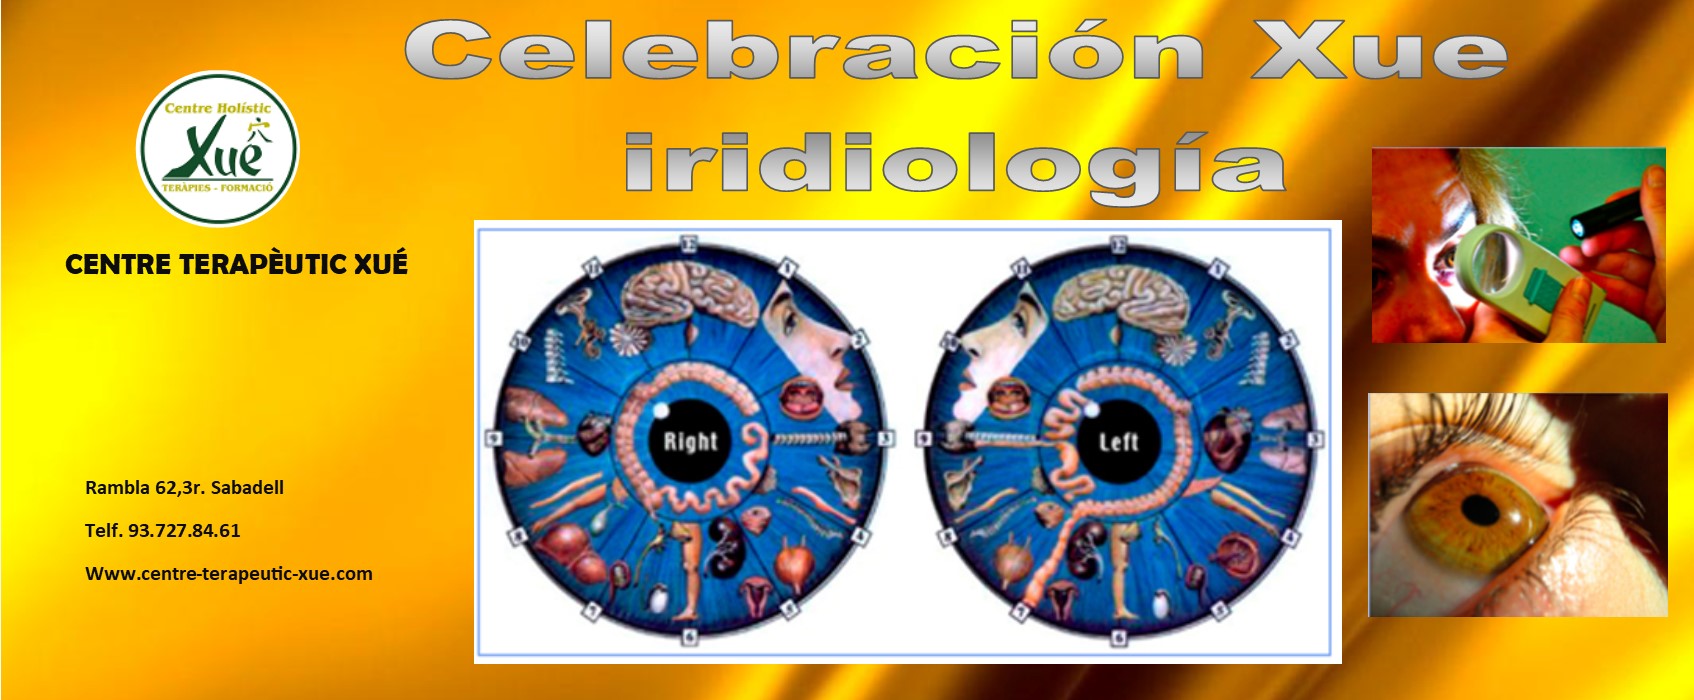 iridiologia